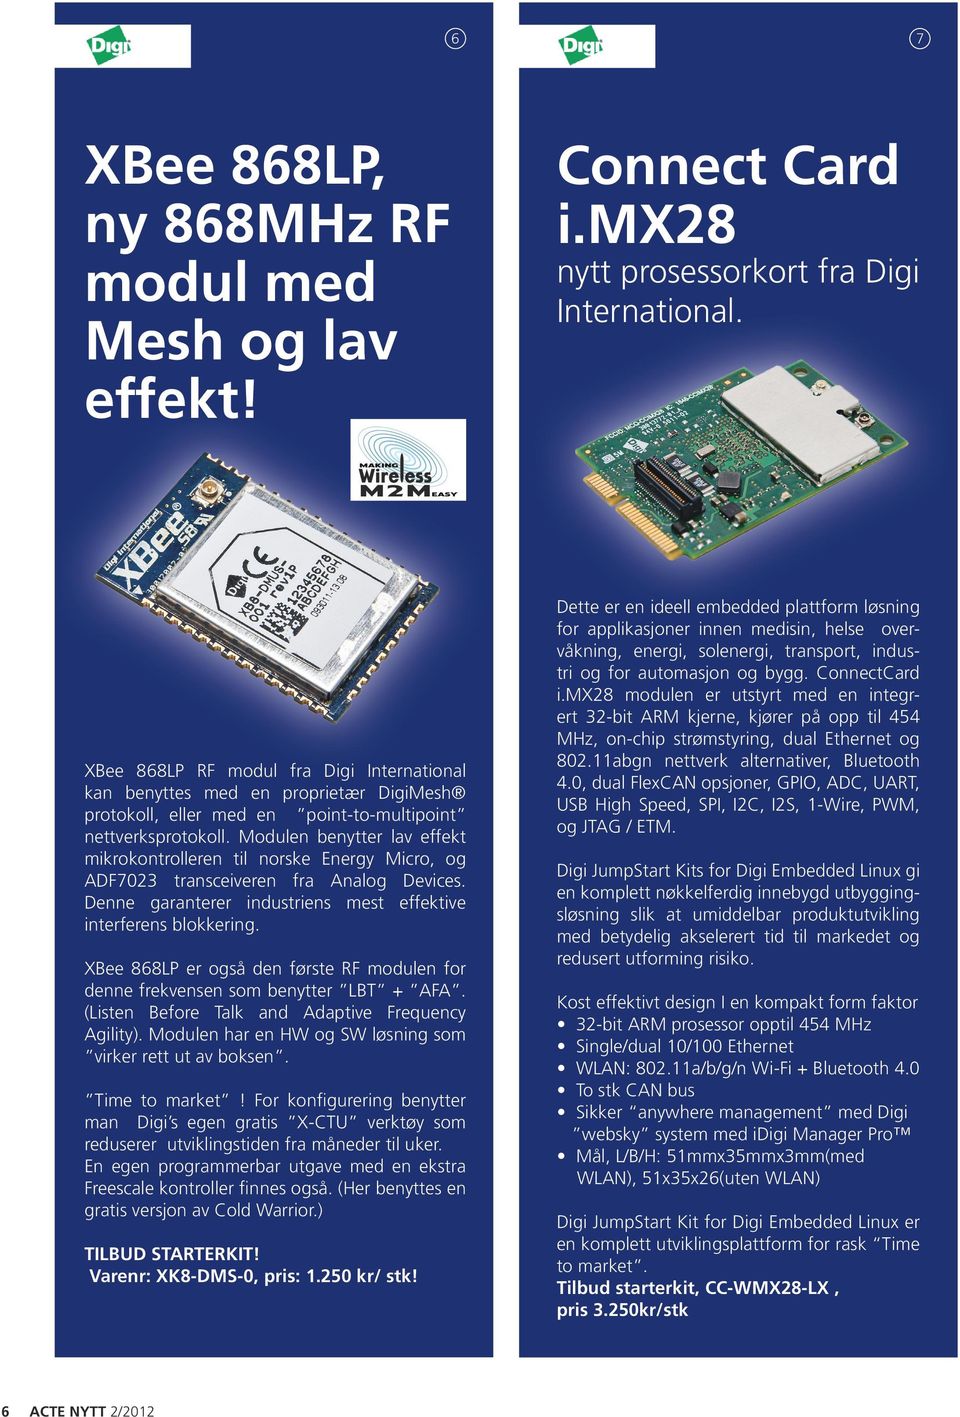 Modulen benytter lav effekt mikrokontrolleren til norske Energy Micro, og ADF7023 transceiveren fra Analog Devices. Denne garanterer industriens mest effektive interferens blokkering.